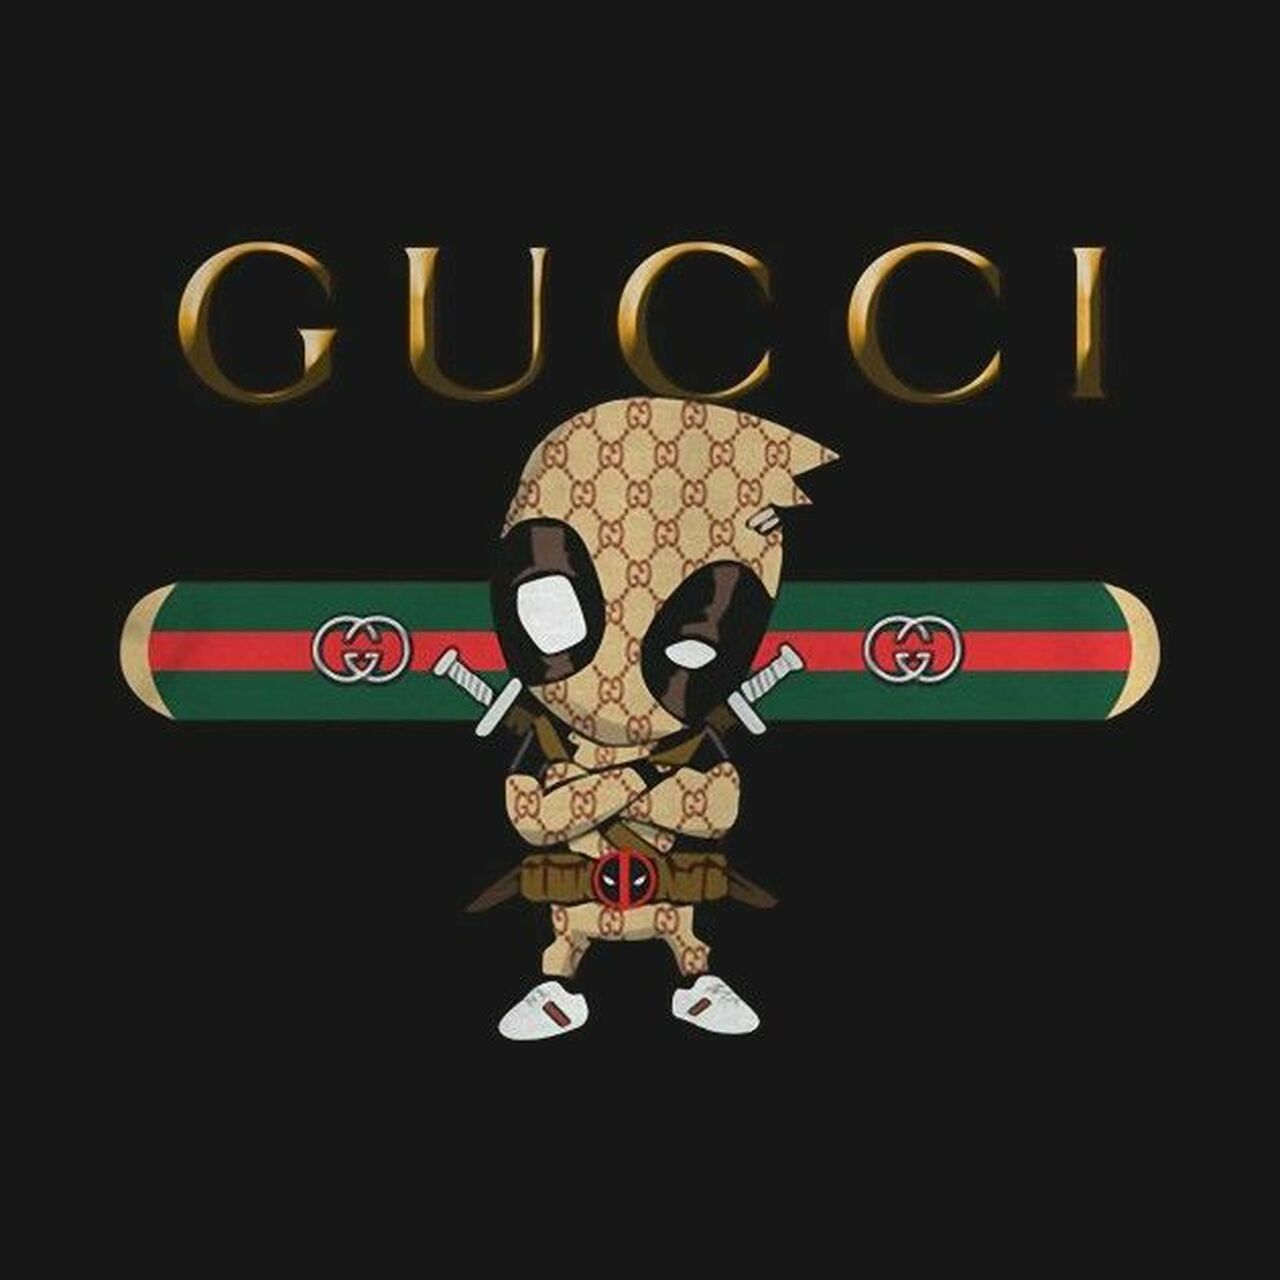 Hình Ảnh Gucci Nền Đen Rắn Trắng Đỏ Hồng Đẹp Nhất 2023